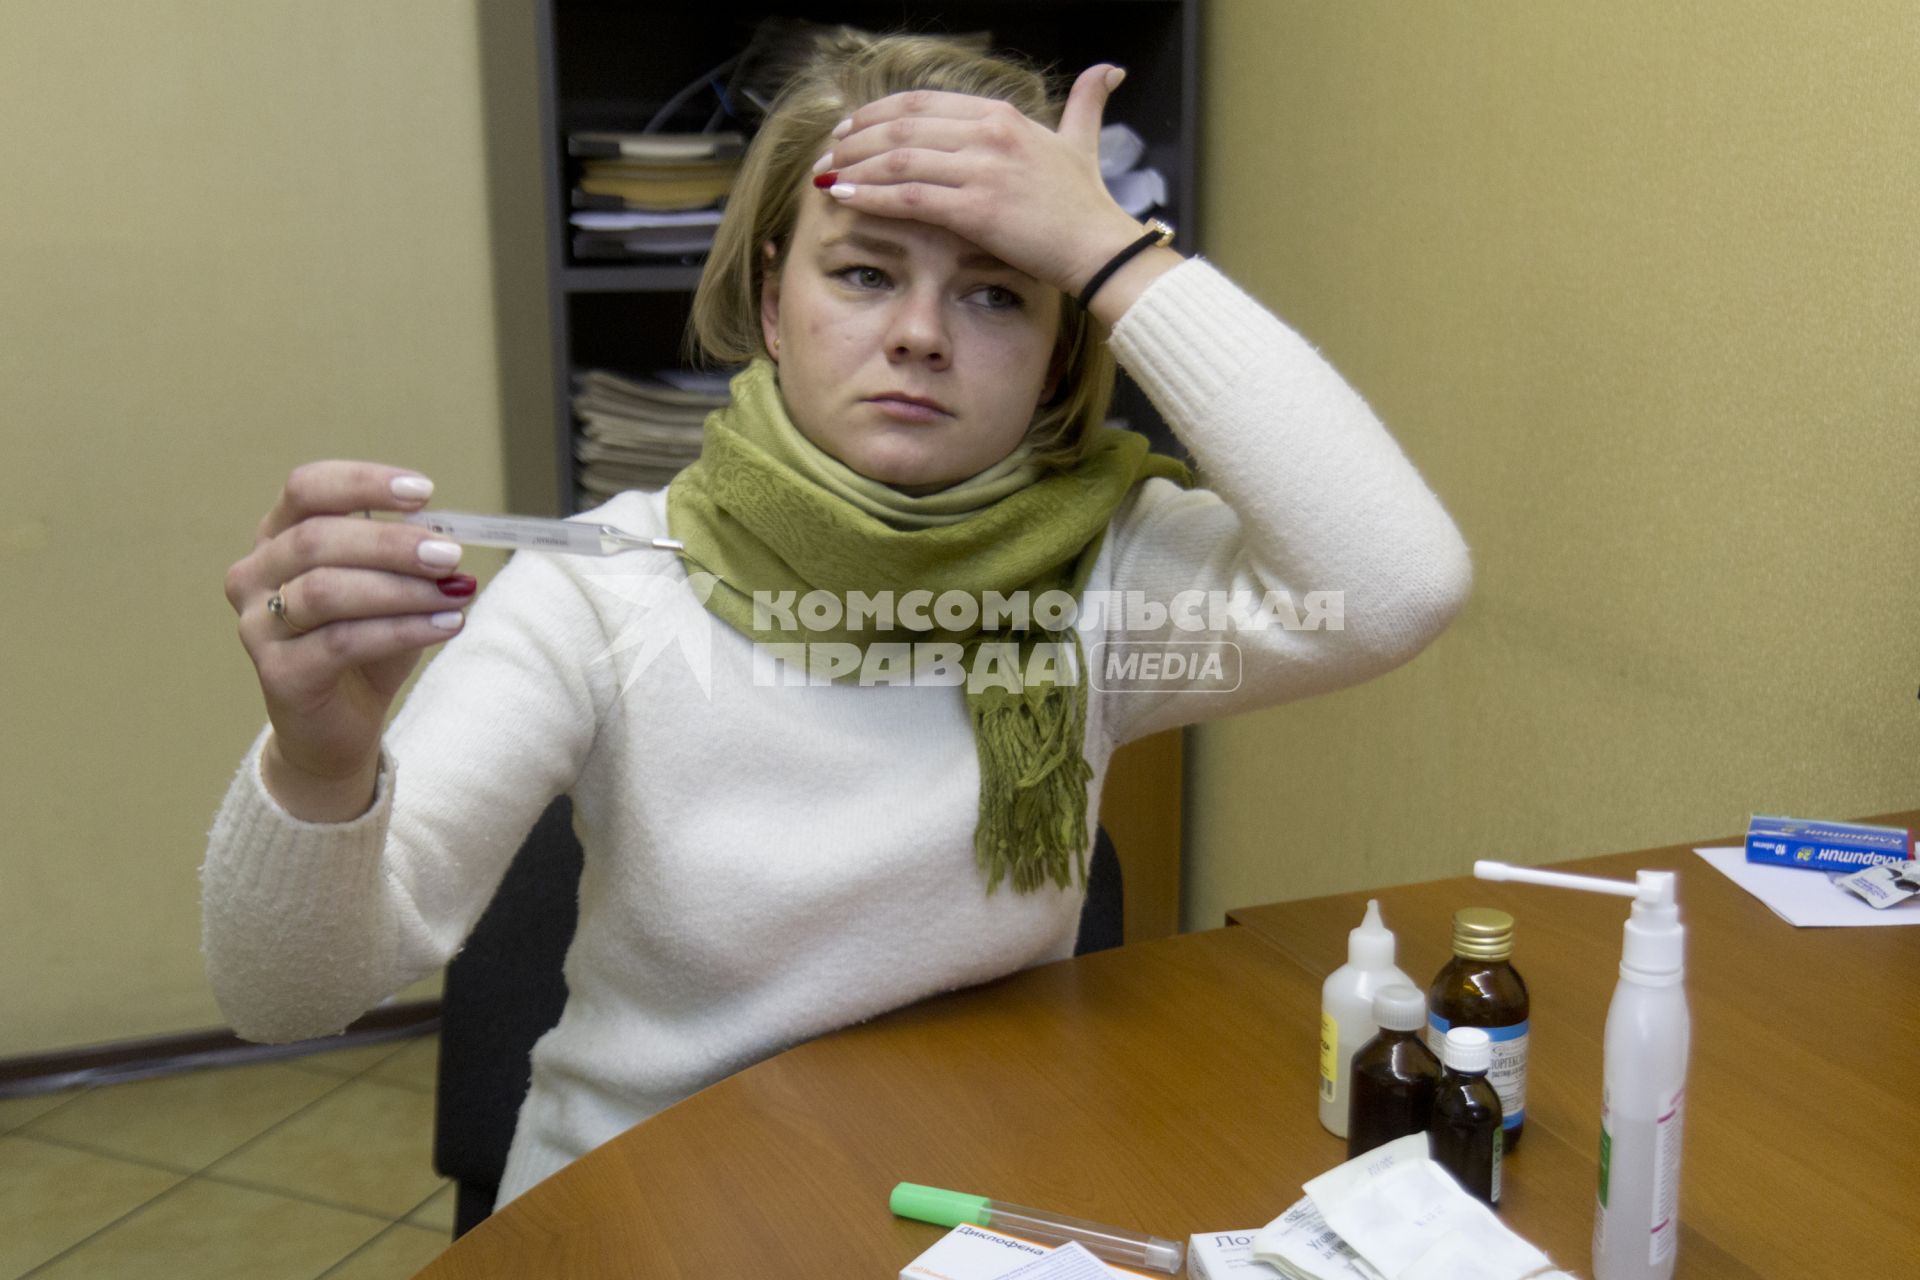 Иркутск. Девушка на рабочем месте в офисе измеряет температуру.